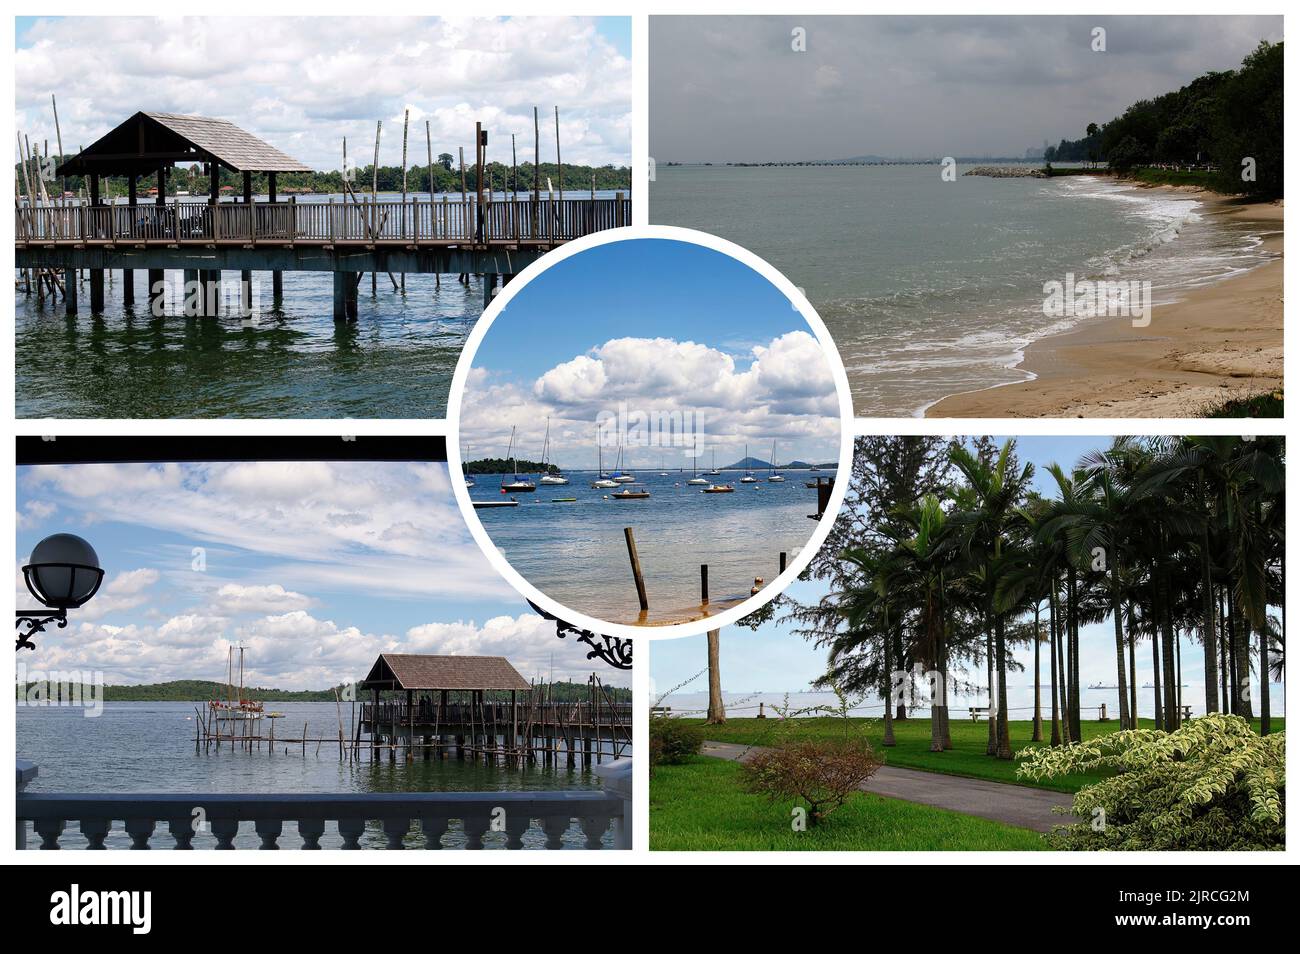 Magnifique Singapour (République de Singapour), un pays insulaire souverain et une ville-État dans la mer de l'Asie du Sud-est. Banque D'Images